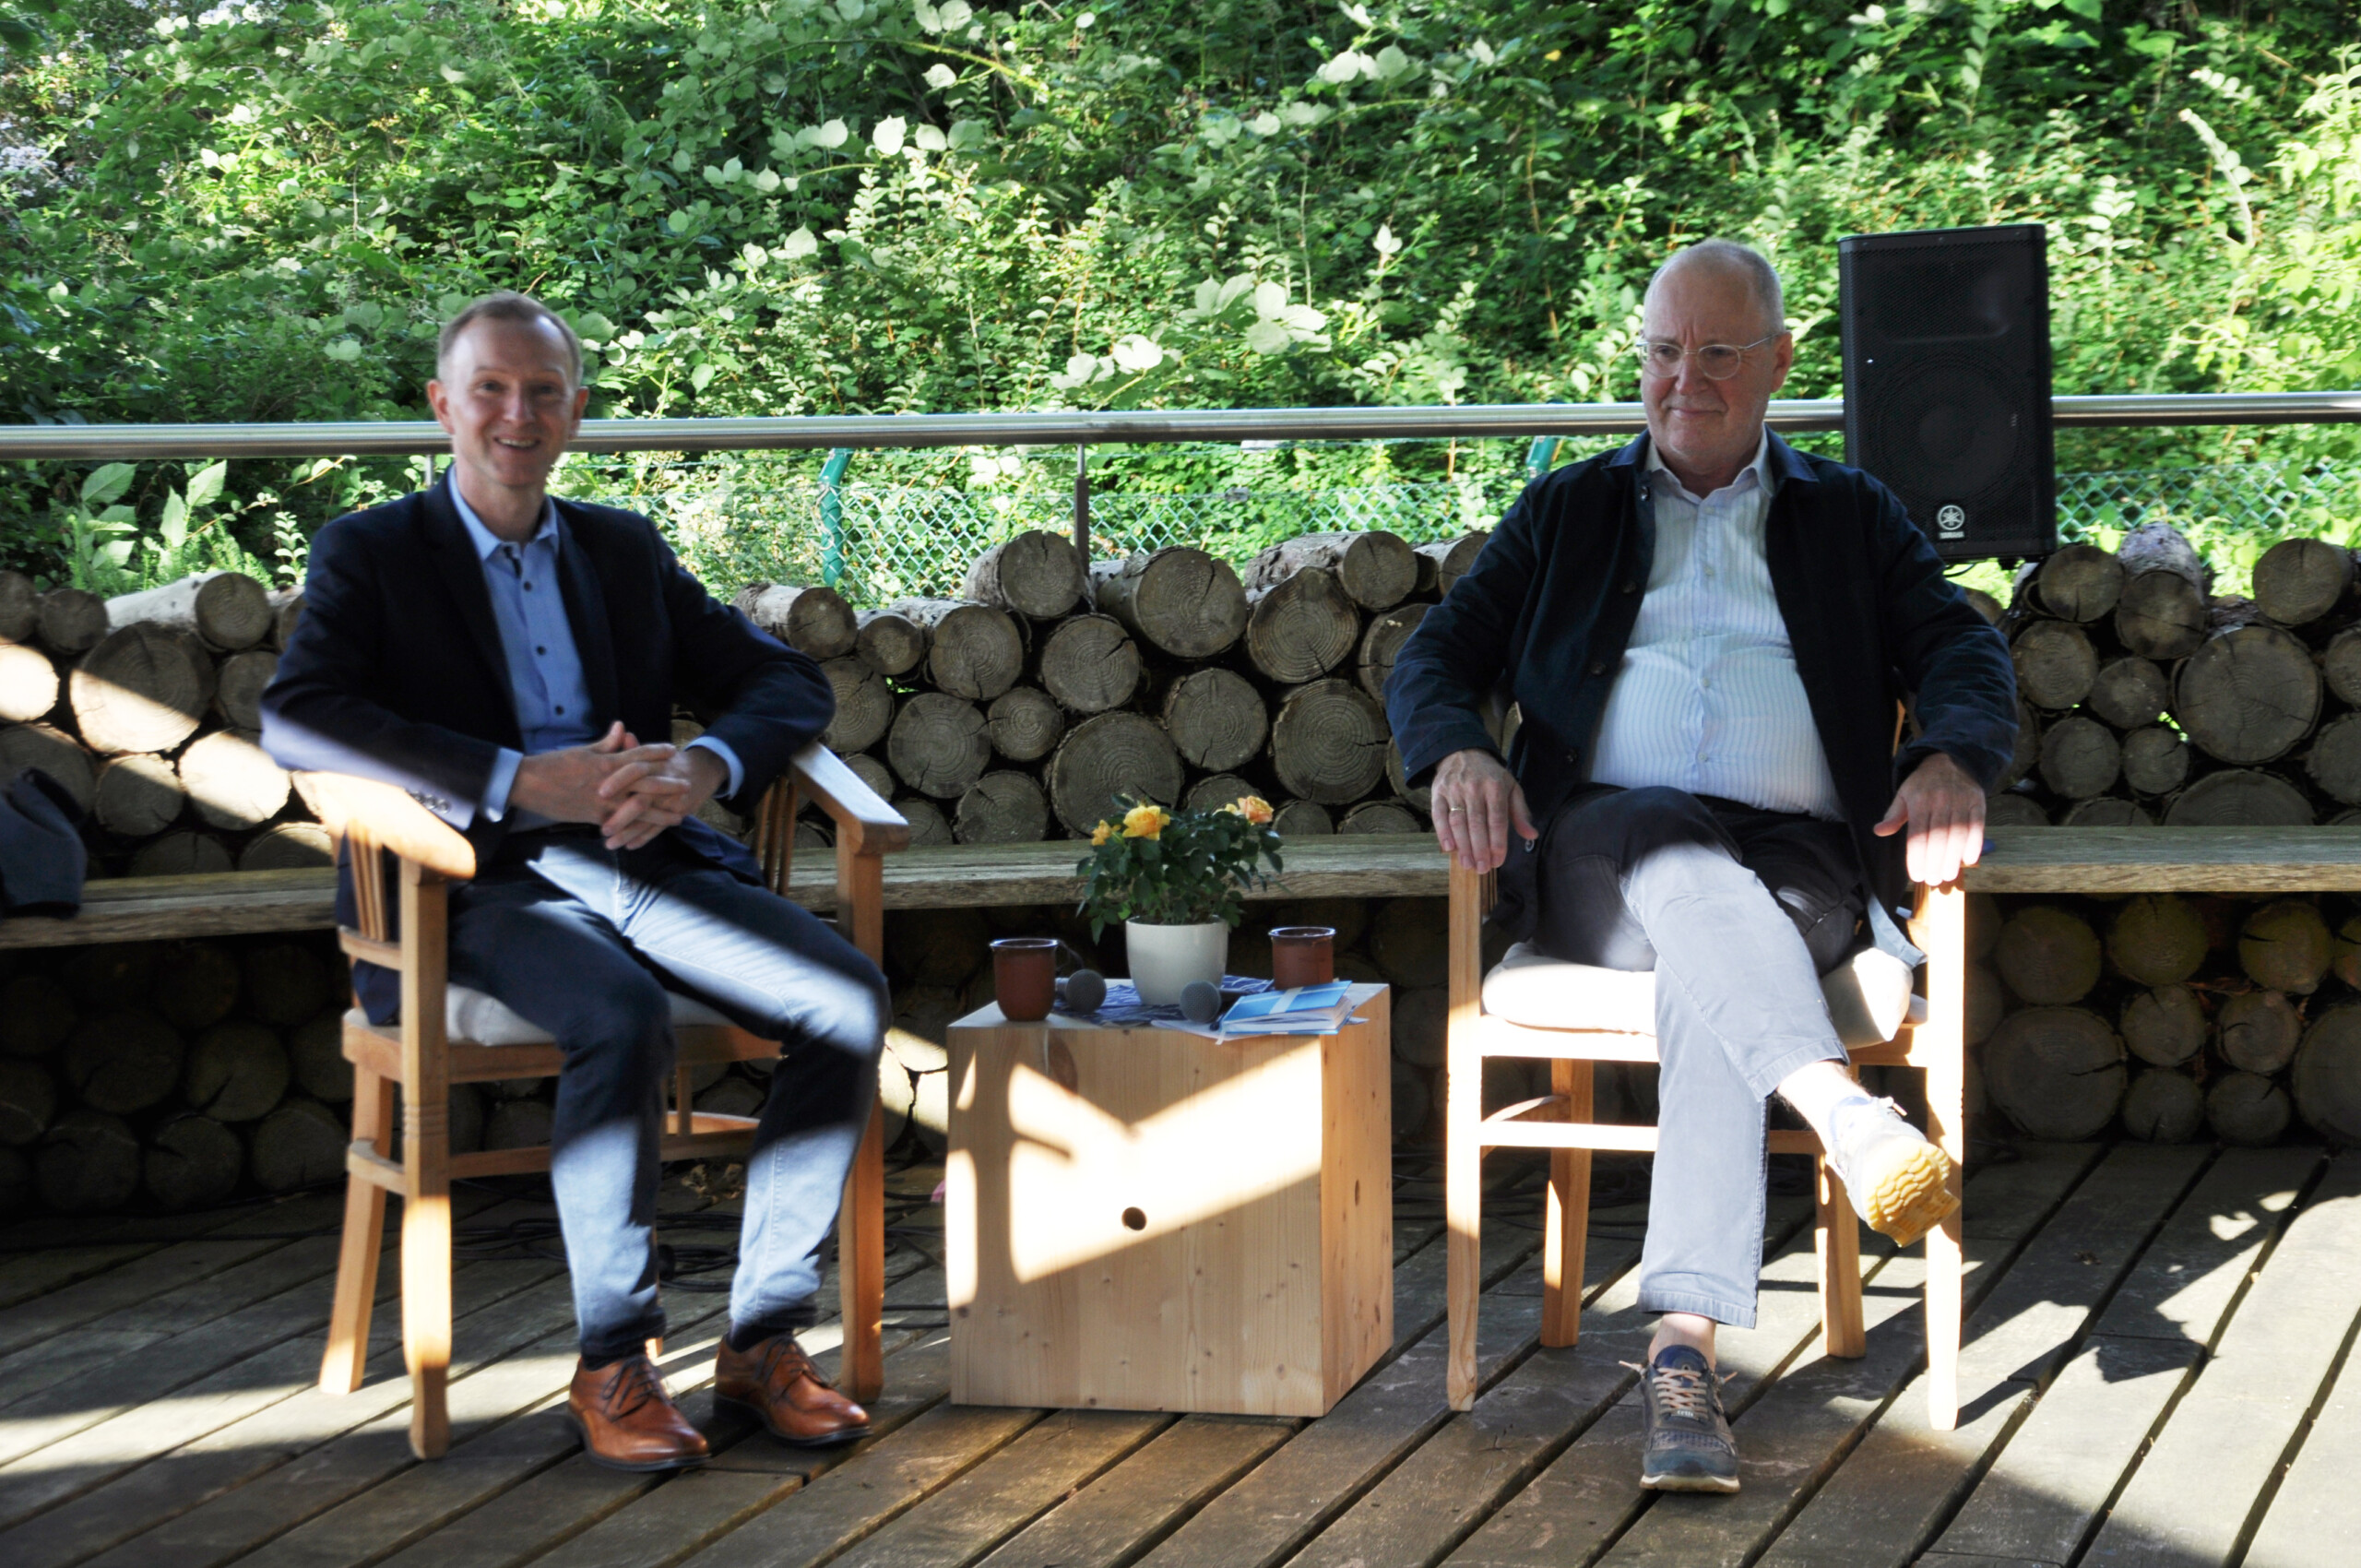 Eutins Tourismuschef Michael Keller und Propst Peter Barz beim „Talk“ im Garten am frischen Wasser. (V.l.n.r.)